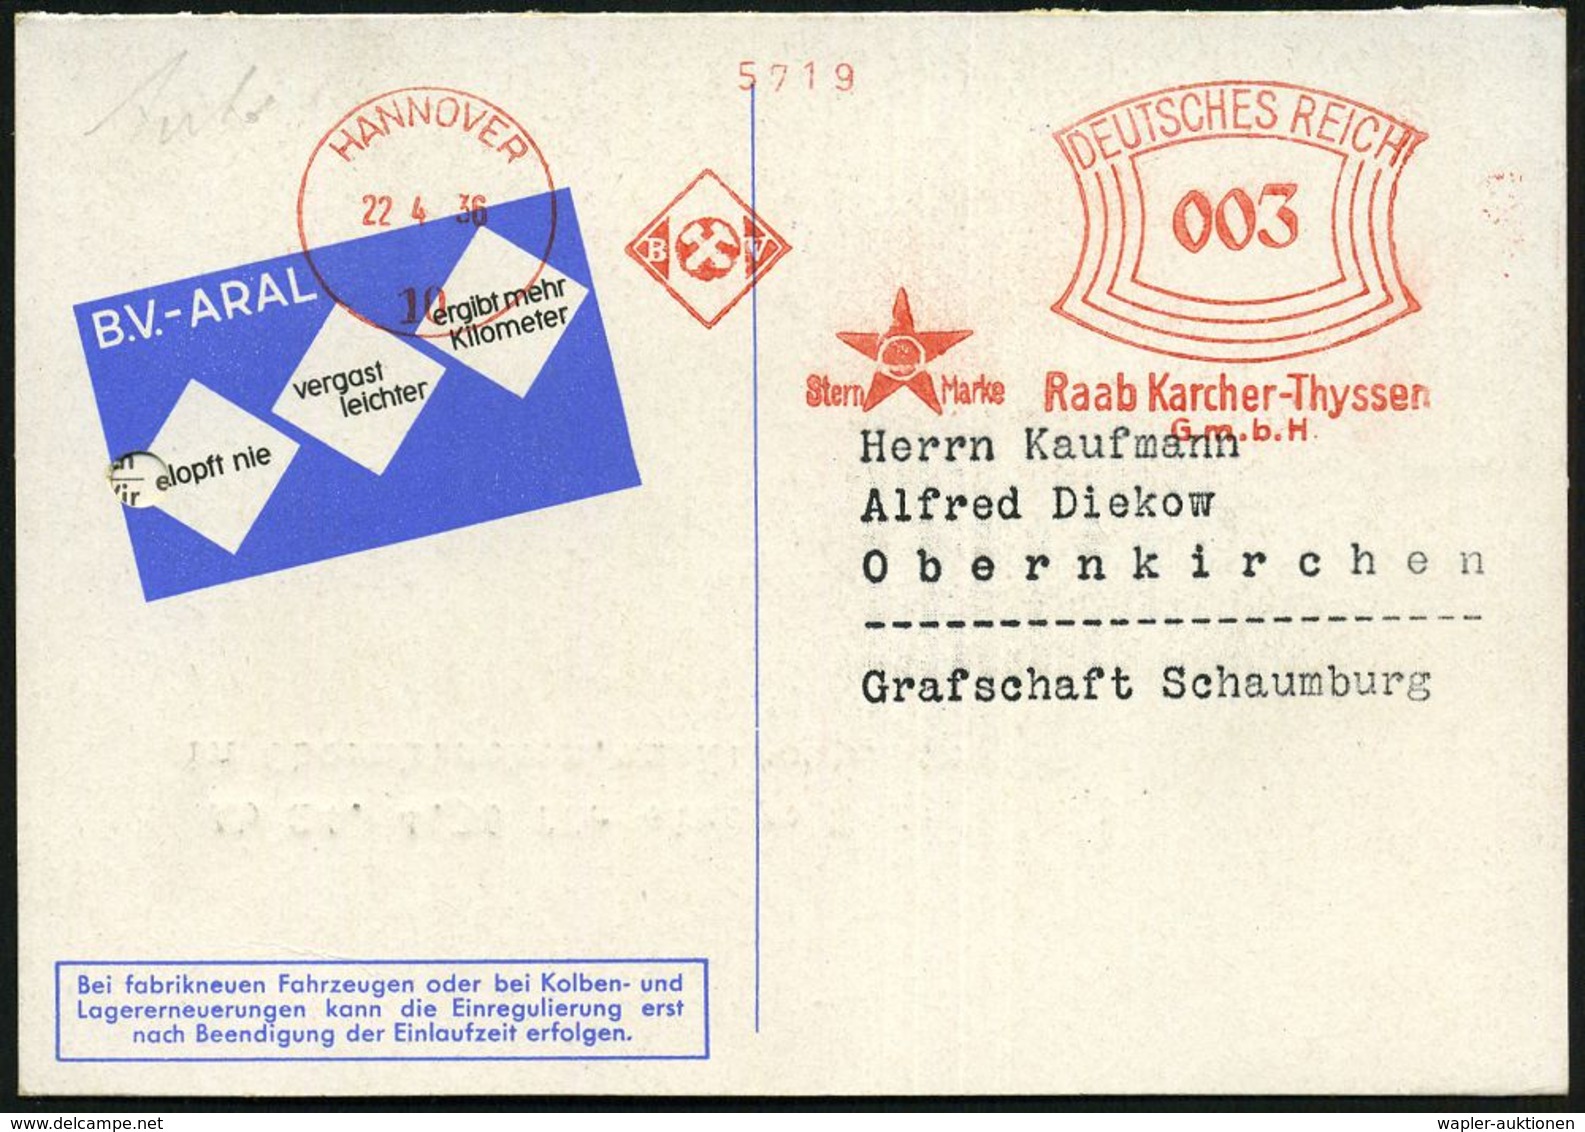 WERKSTATT / GARAGE / TANKSTELLE : HANNOVER/ 10/ BV/ ..Raab Karcher-Thyssen/ GmbH 1936 (22.4.) AFS (Aral-Stern-Logo) Klap - Voitures